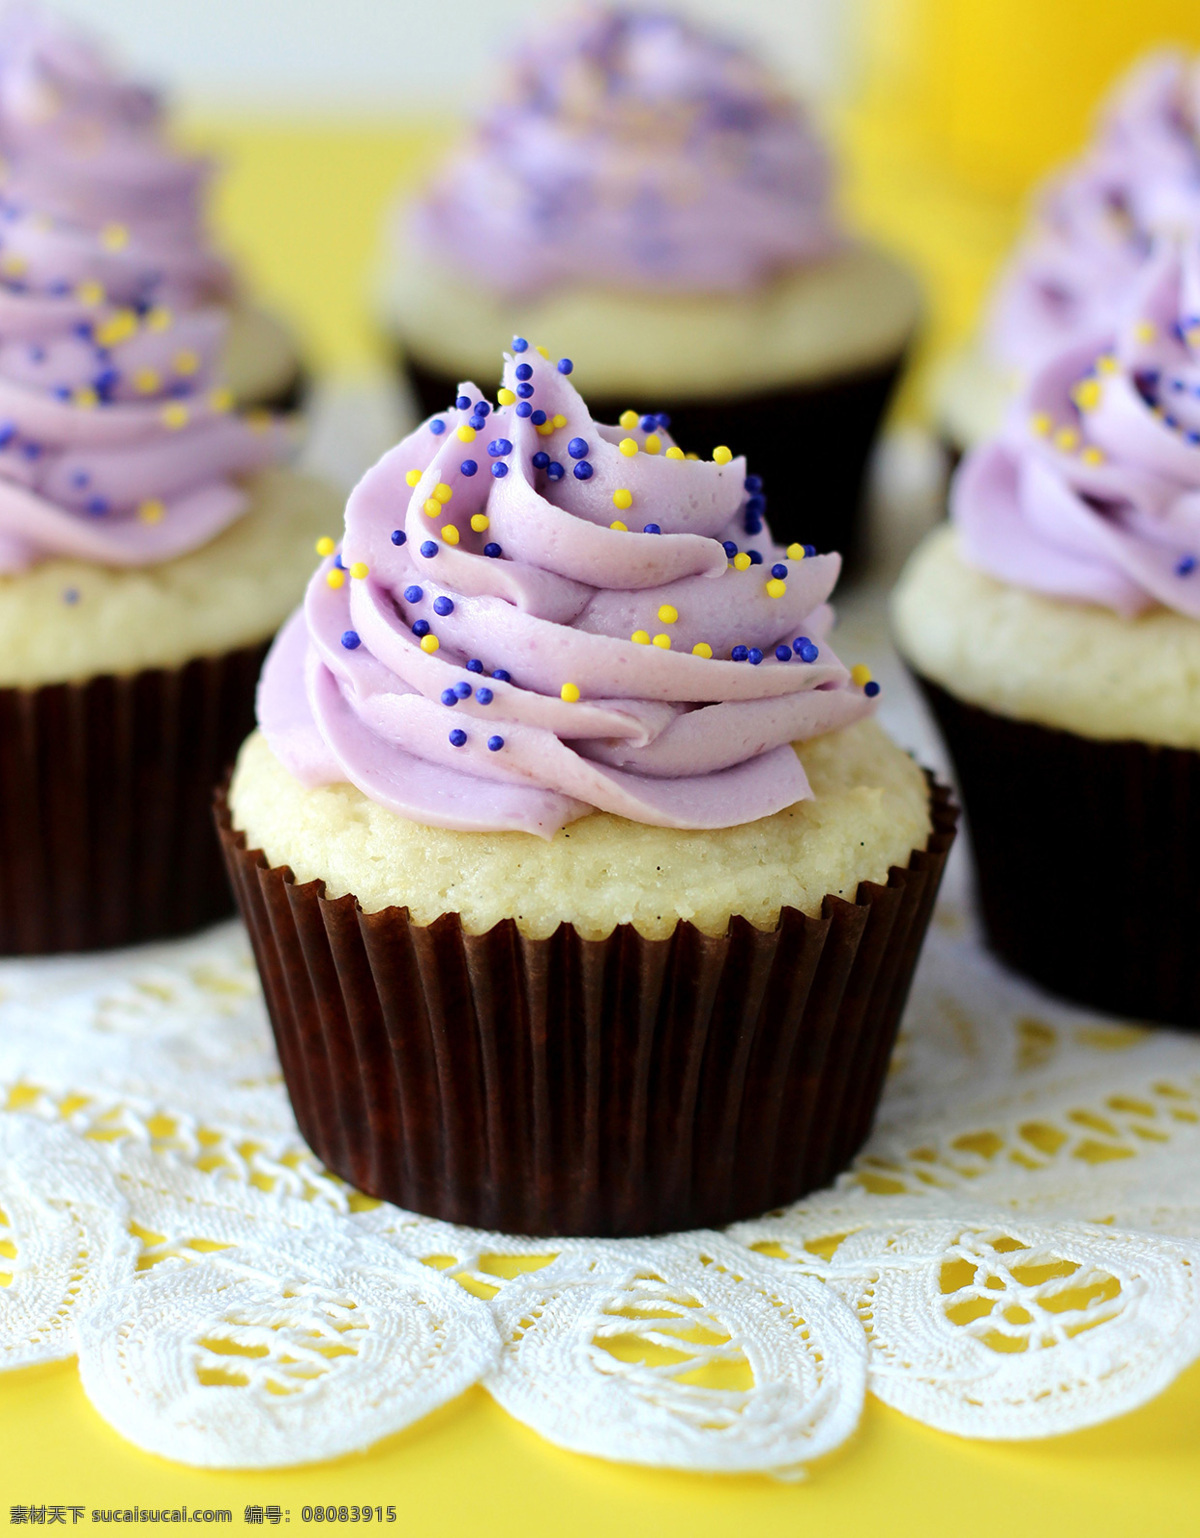 紫色 纸杯 蛋糕 紫色纸杯蛋糕 纸杯蛋糕 食物 餐厅美食 甜品 甜点 生日蛋糕图片 餐饮美食